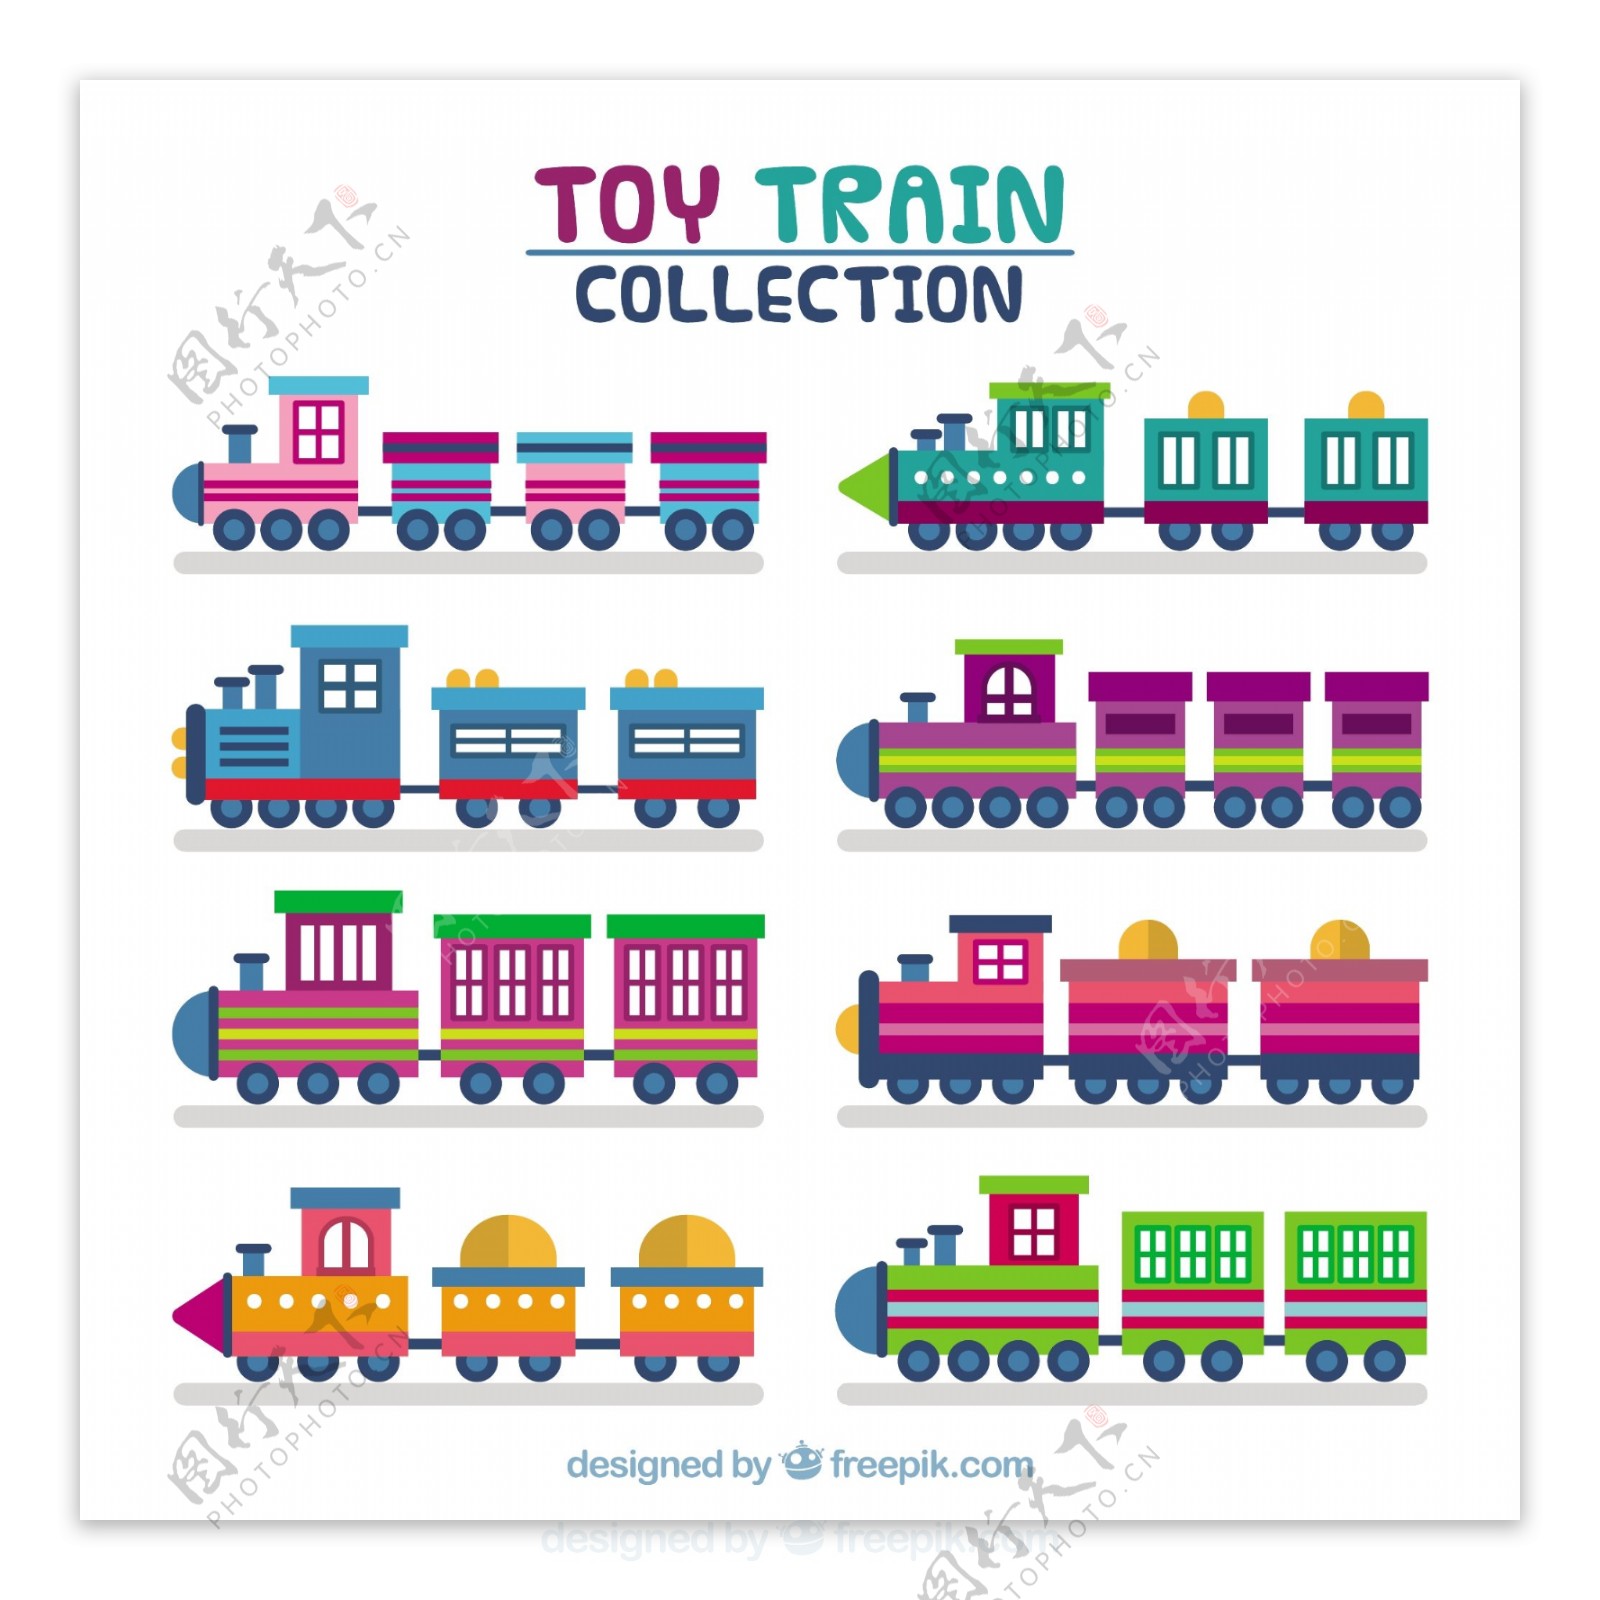 手绘扁平风格梦幻般颜色的玩具火车